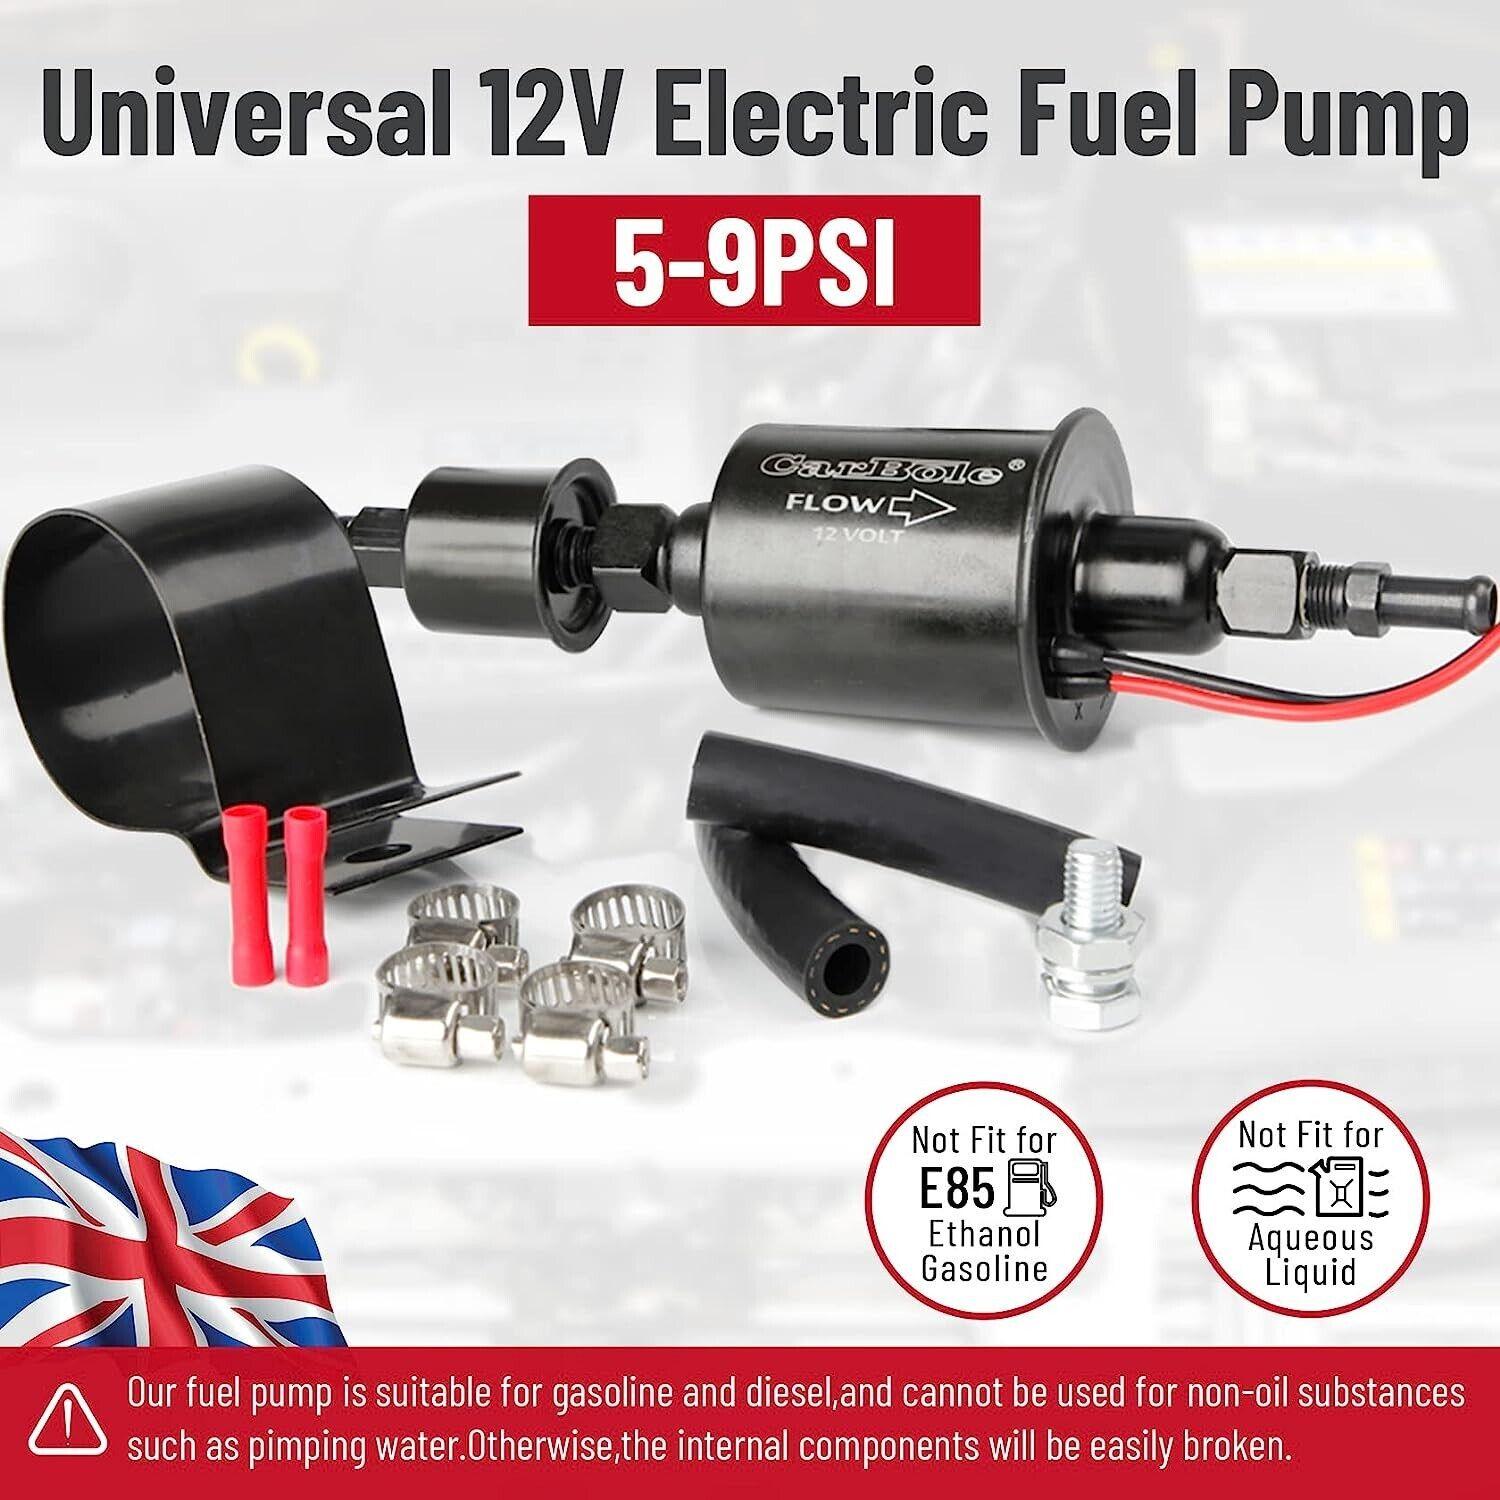 Electric Fuel Pump 5-9 PSI 12V Universal Petrol Gasoline & Diesel Pump - Massive Discounts